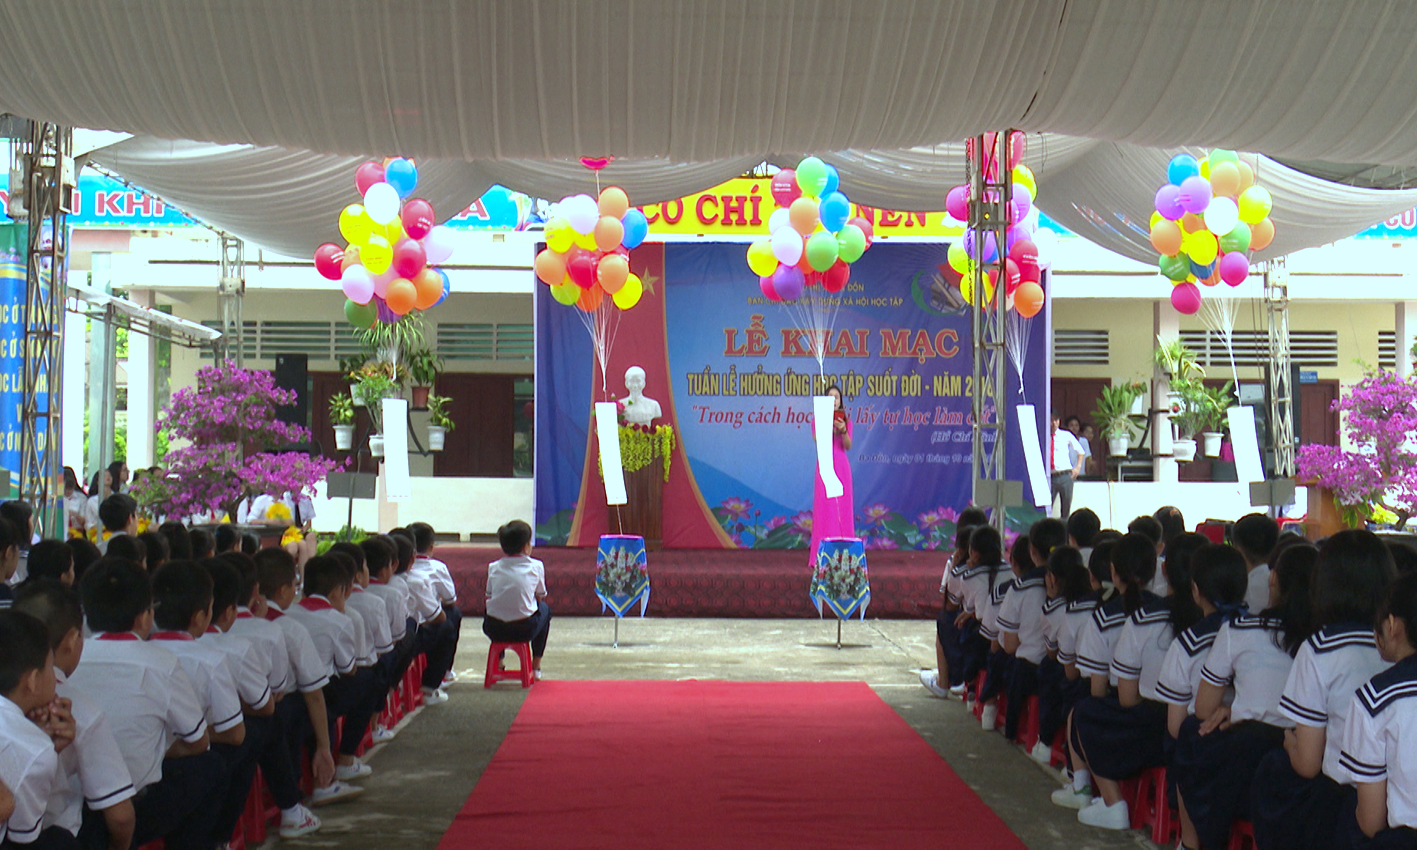 Thị xã Ba Đồn khai mạc tuần lễ hưởng ứng học tập suốt đời năm 2018